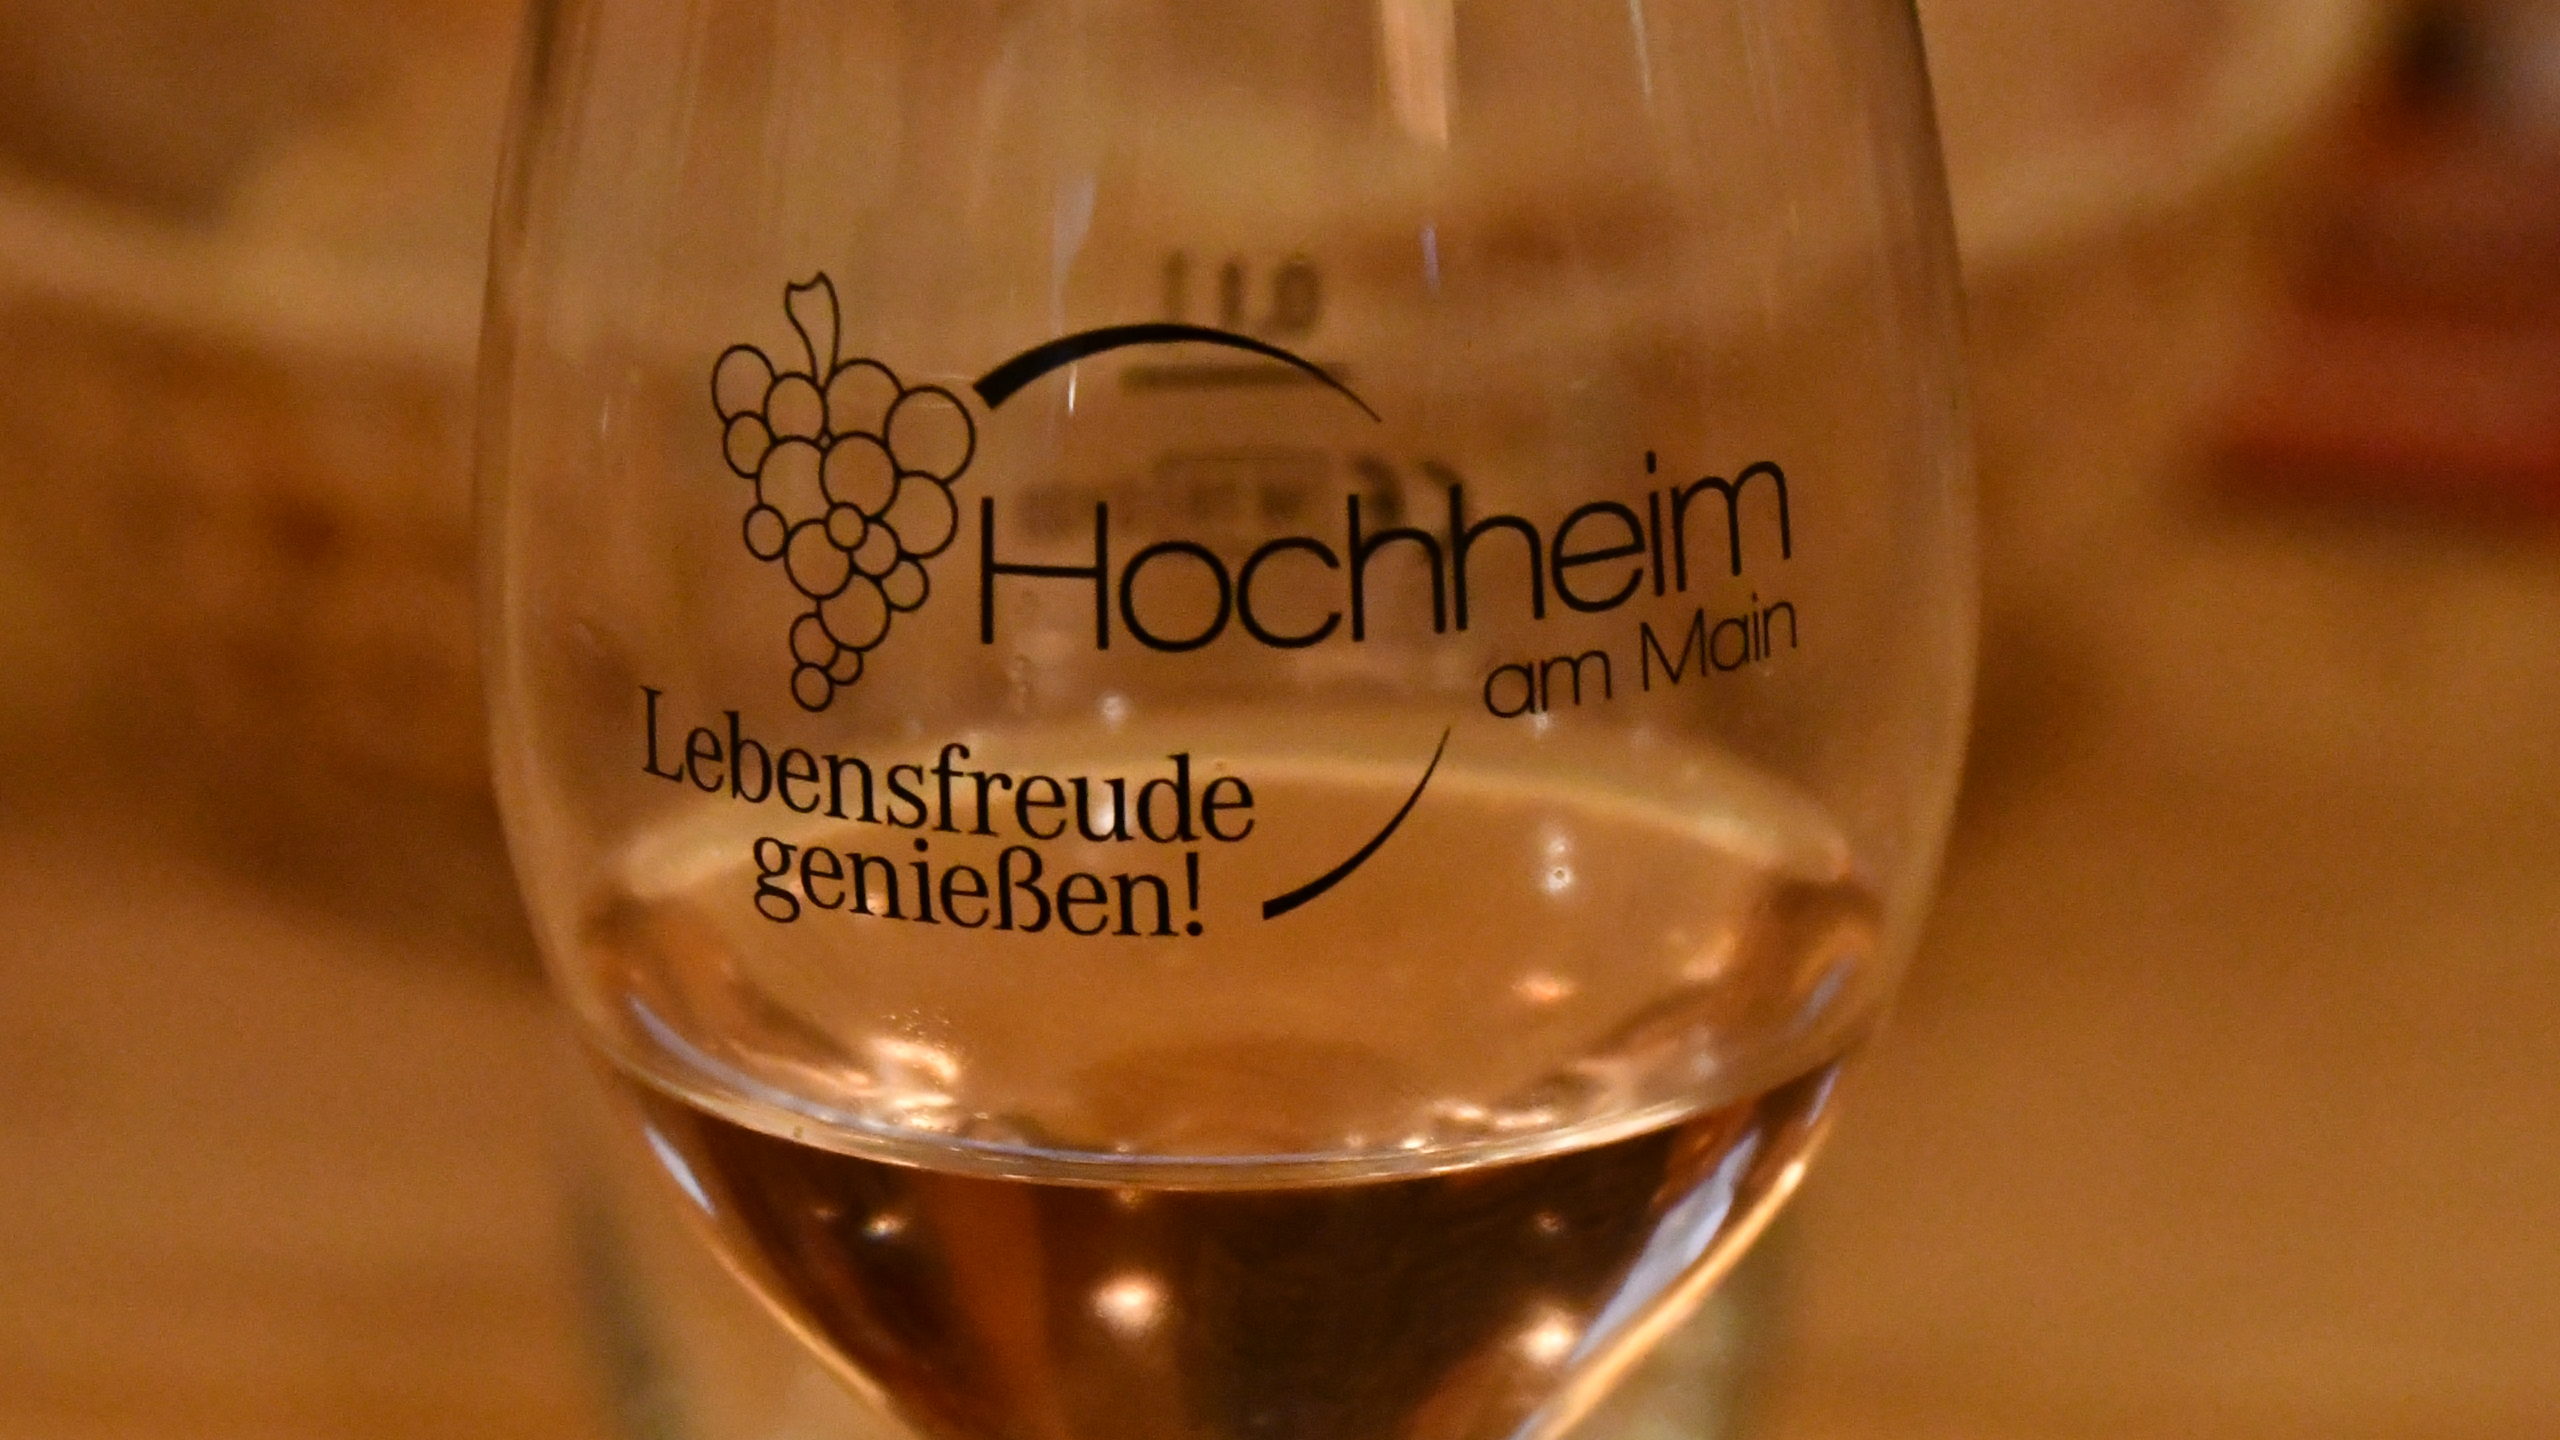 Ein mit Wein gefülltes Weinglas mit der Aufschrift Hochheim am Main und Weinreben